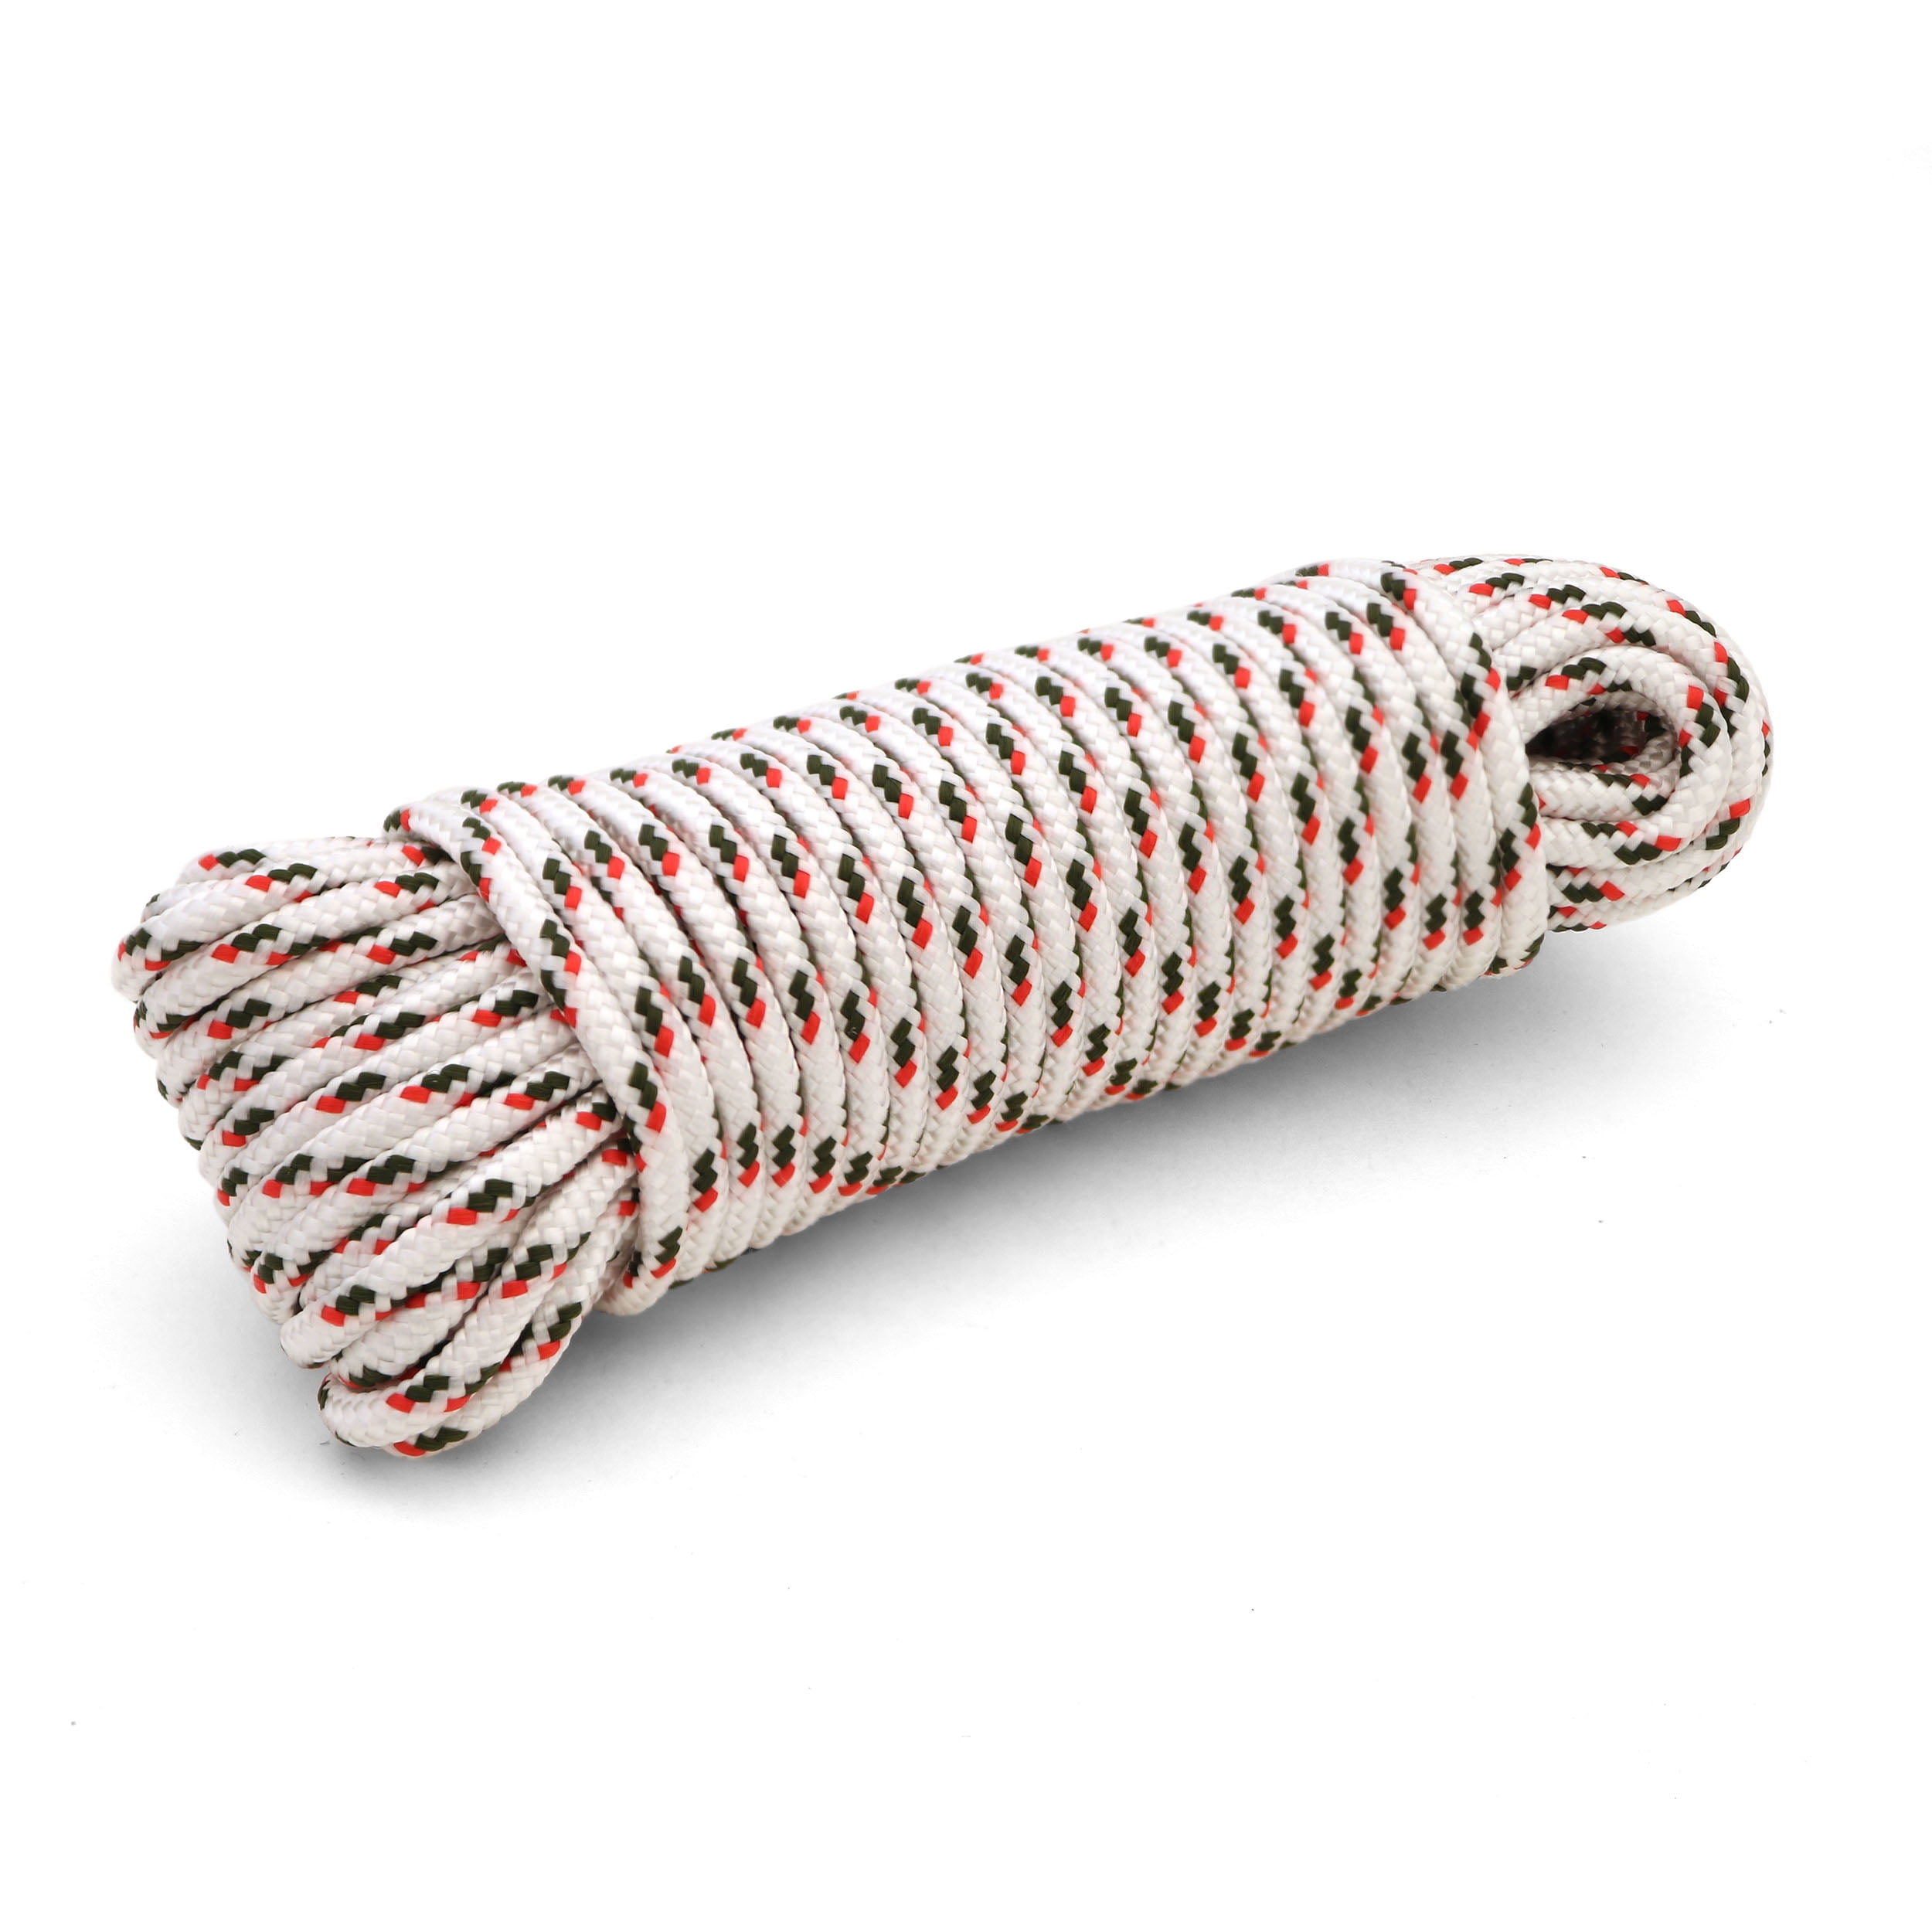 3-pack Coghlan's Multi Usage Utility Corde polypropylène corde corde à linge 